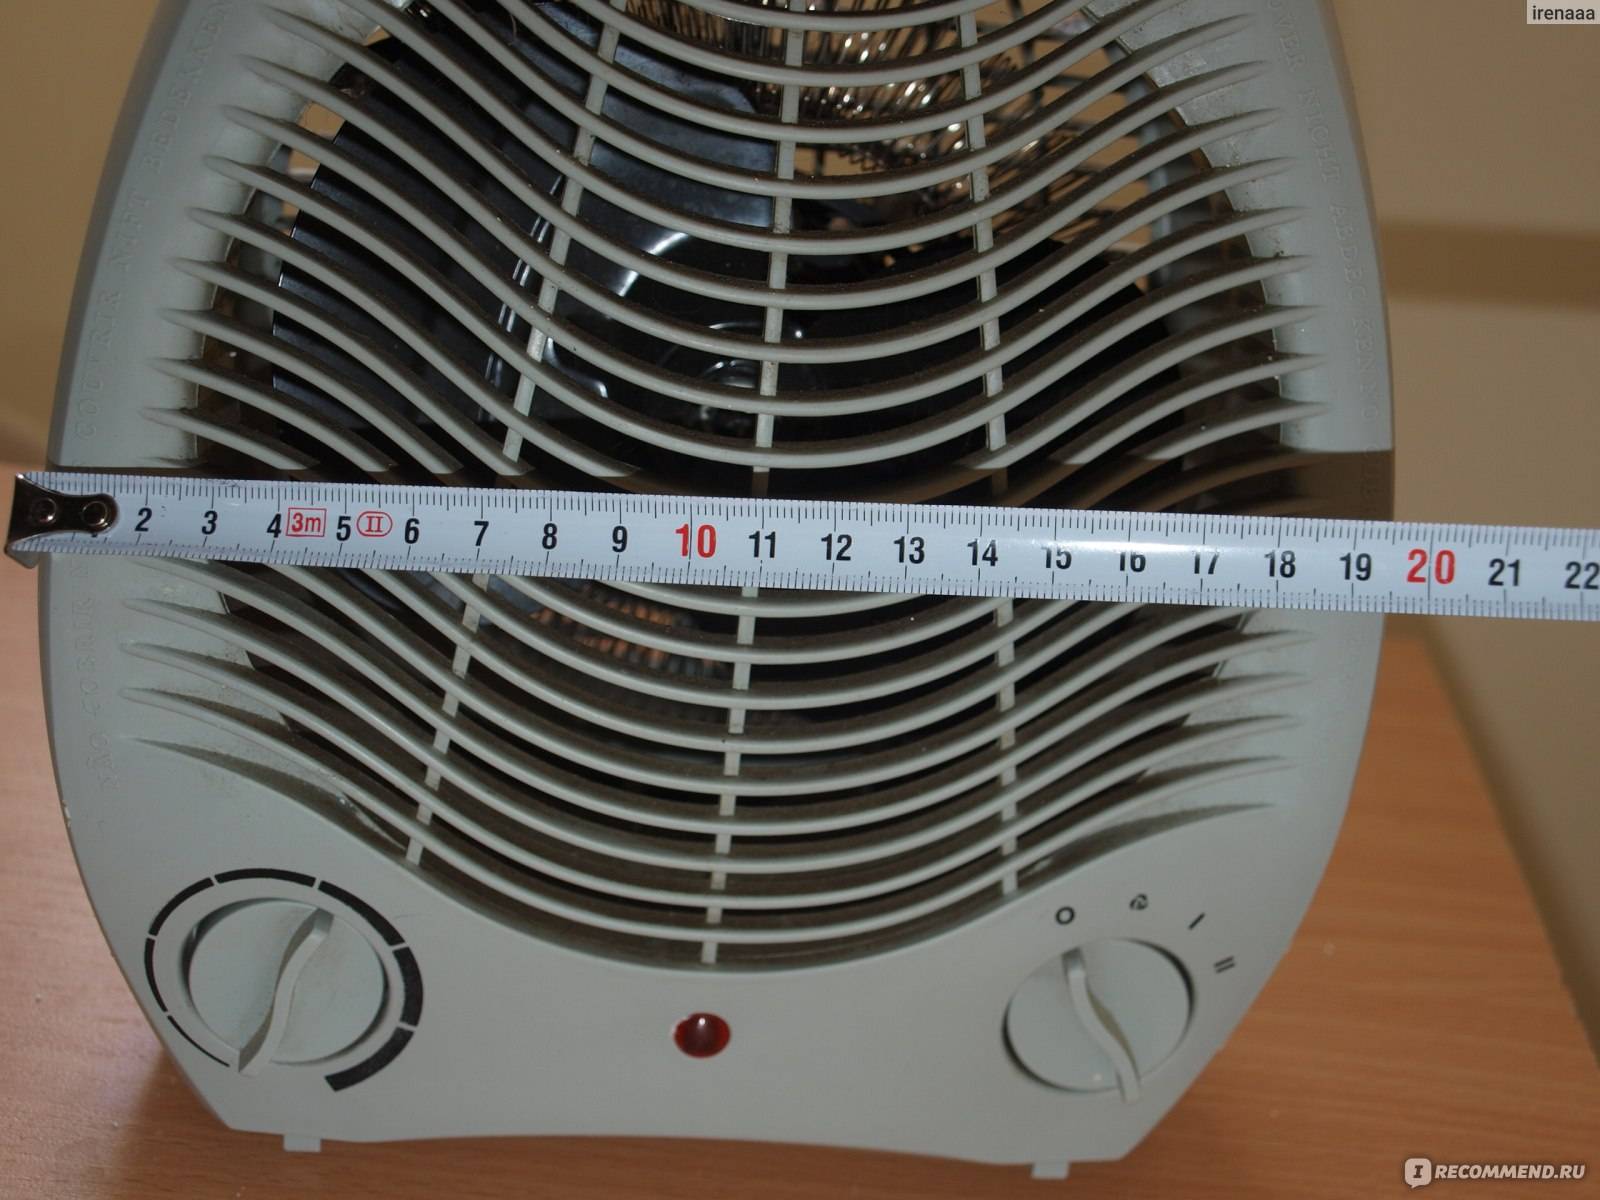 Как сделать самодельный вентилятор. вентилятор из кулера и диска своими руками. вариант #1 – модель из жесткого пластика